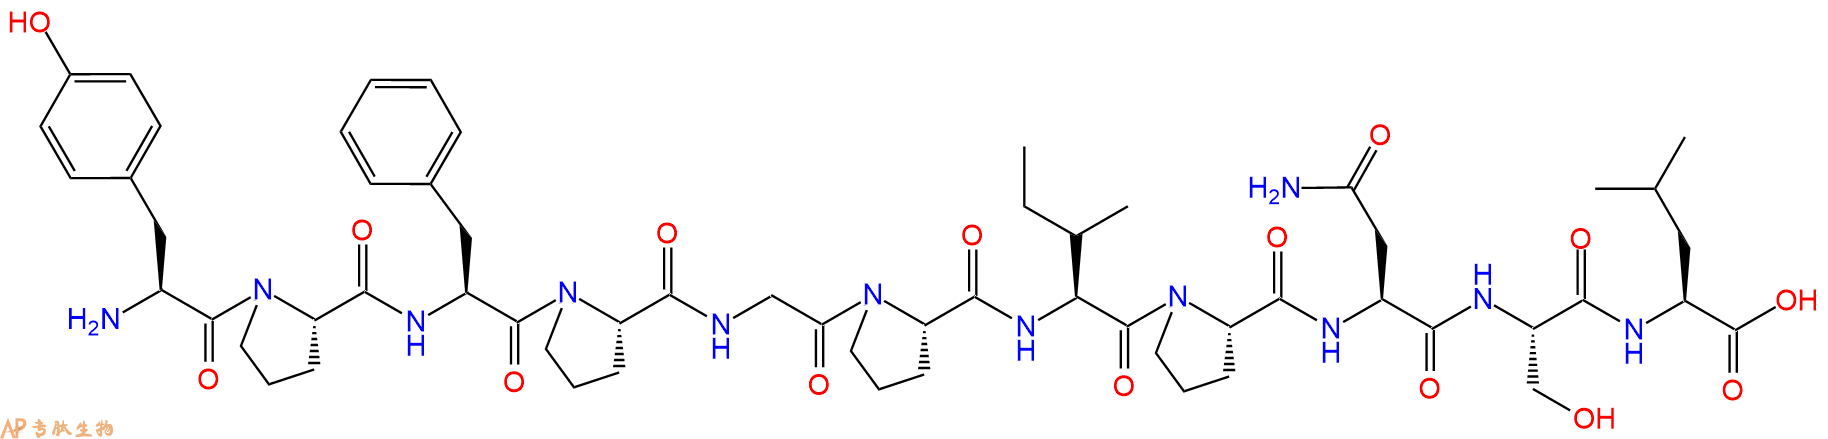 专肽生物产品β-Casomorphin(1-11), bovine